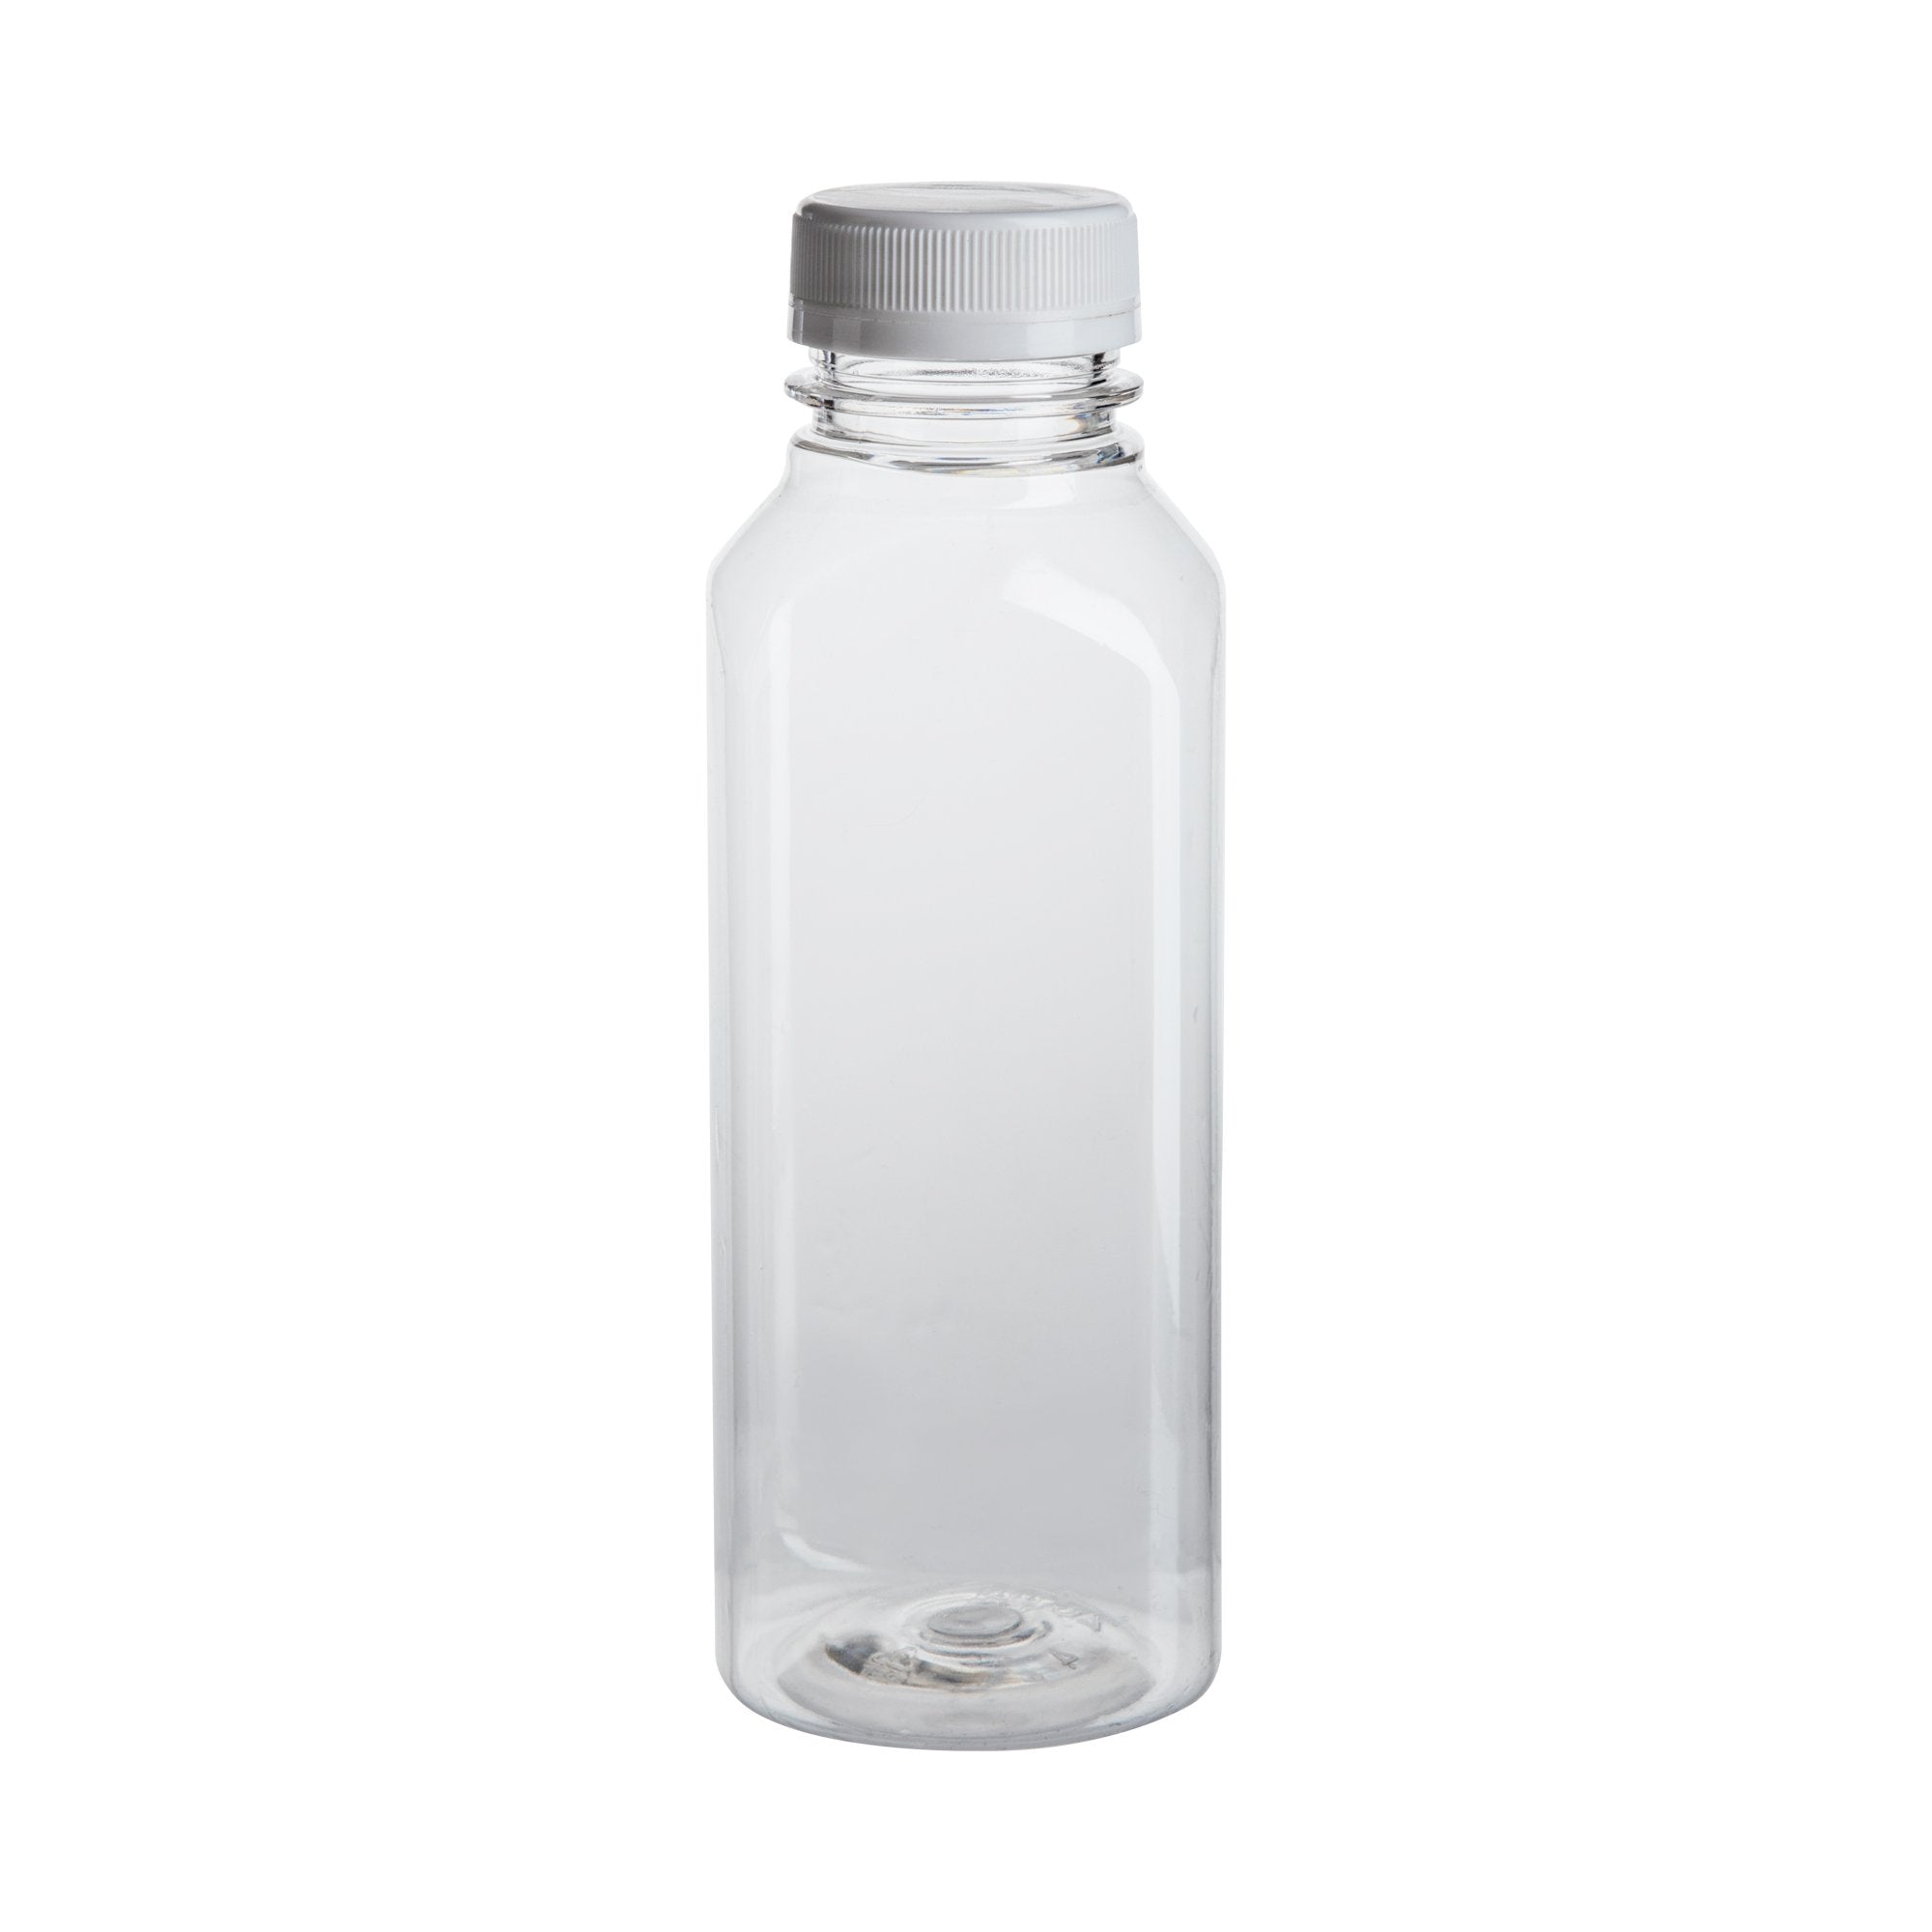 Clear Plastic Juice Bottles - 16 oz, White Cap